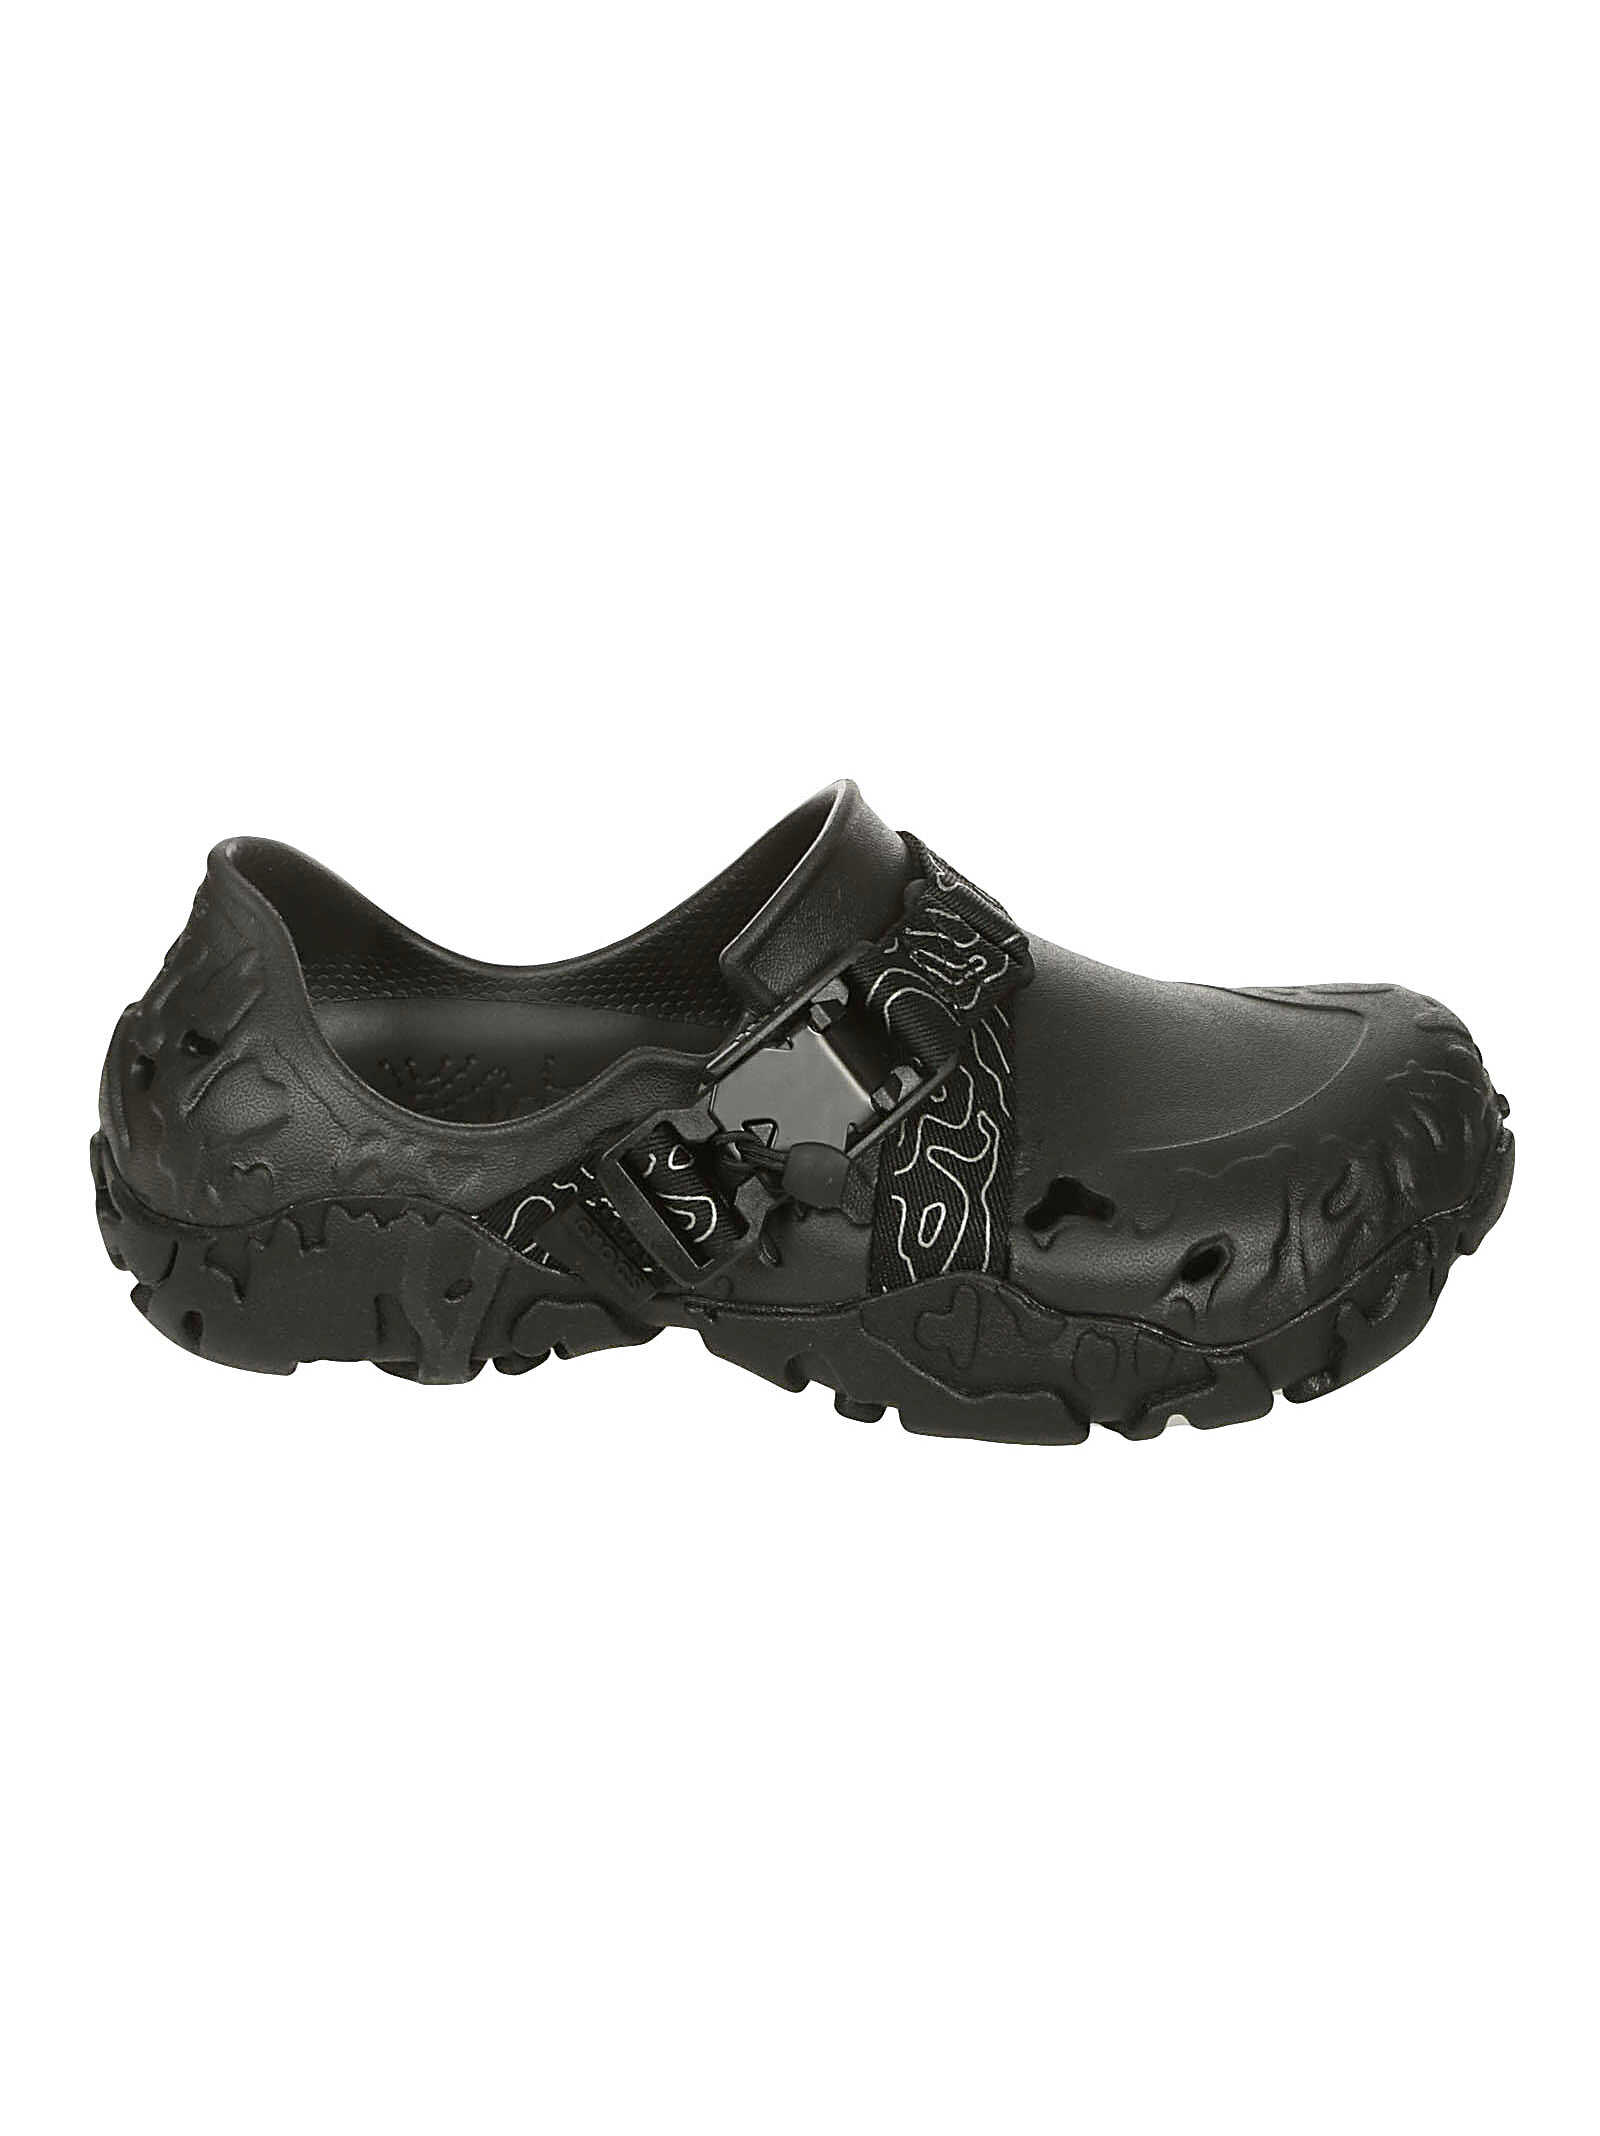 Crocs Crocs Shoes CR.208173 BKBK BLACK Bkbk Black